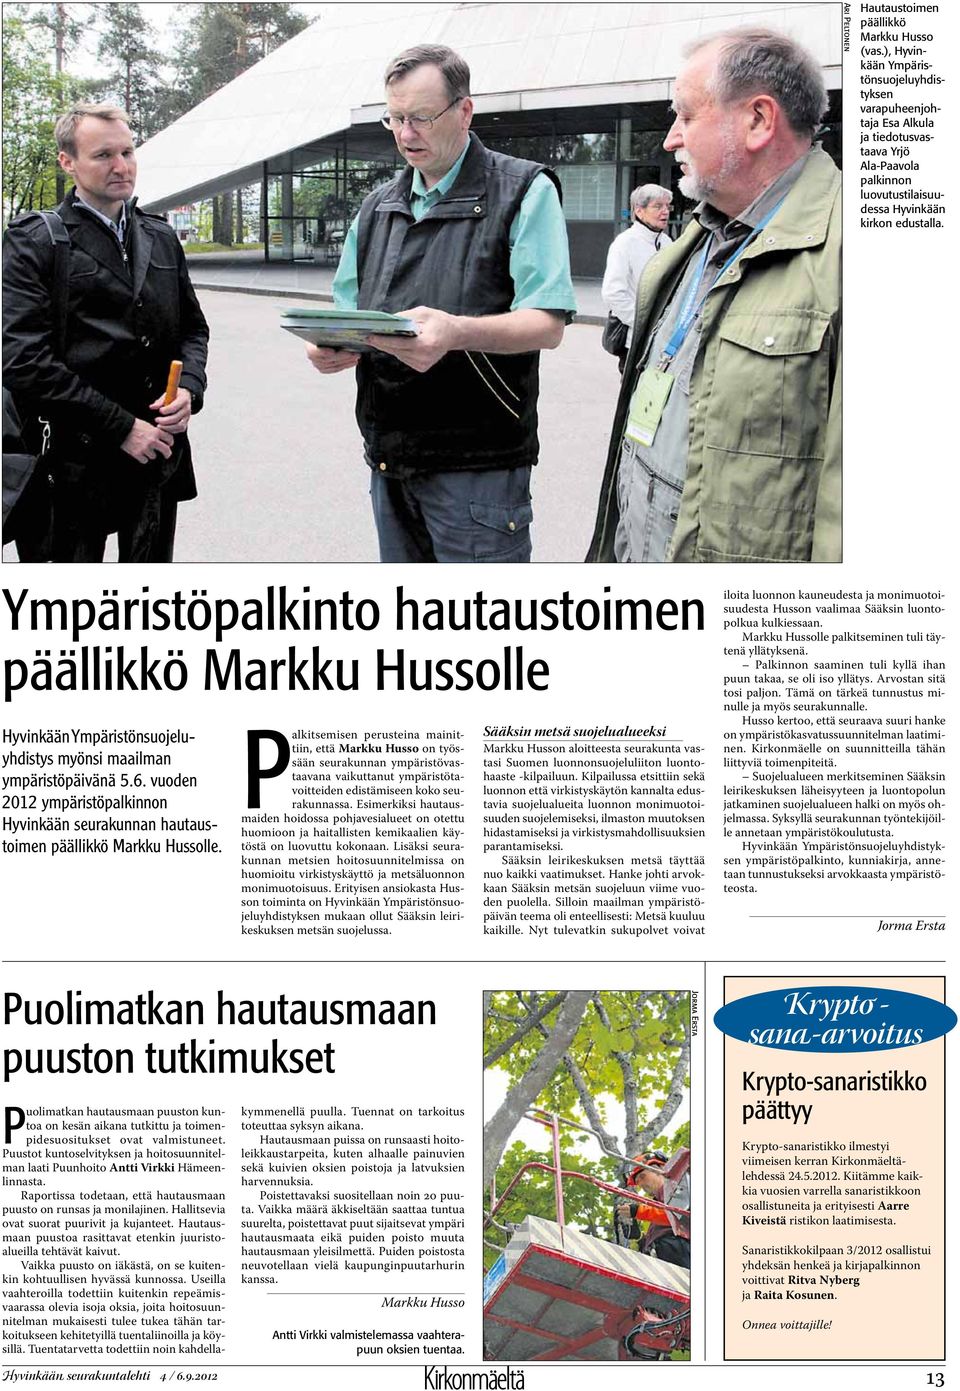 Ympäristöpalkinto hautaustoimen päällikkö Markku Hussolle Hyvinkään Ympäristönsuojeluyhdistys myönsi maailman ympäristöpäivänä 5.6.